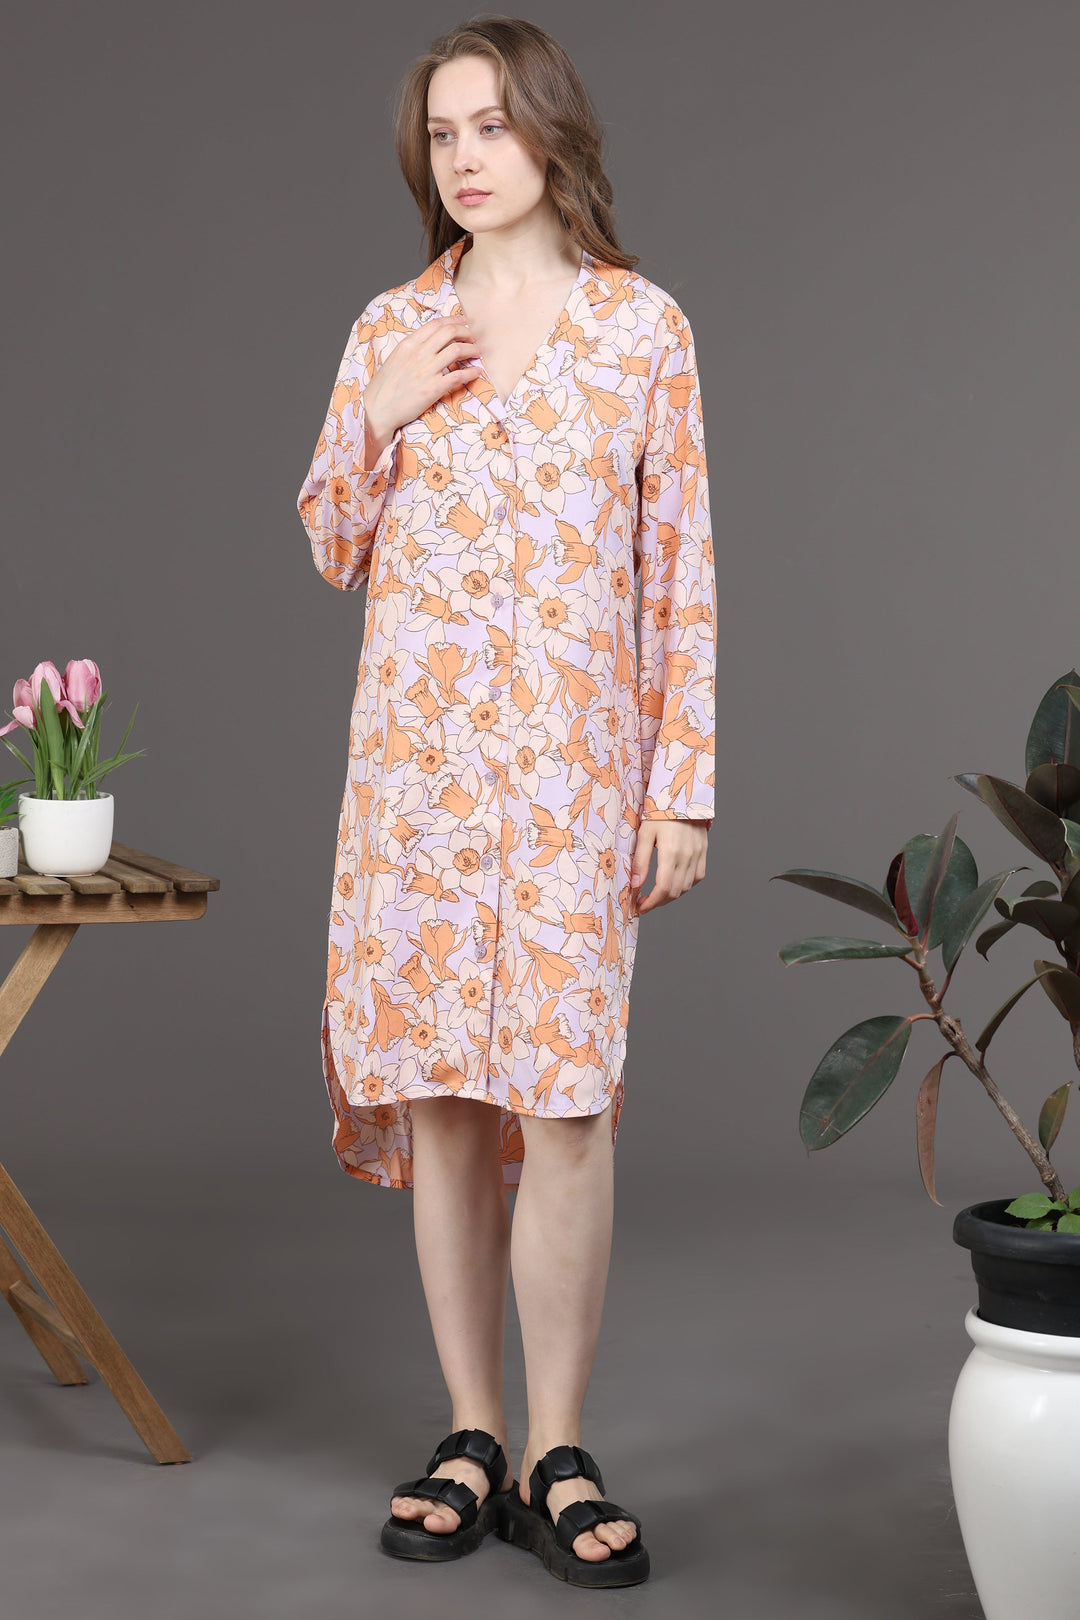 Elegant Floral Dress(Orange/Skin)